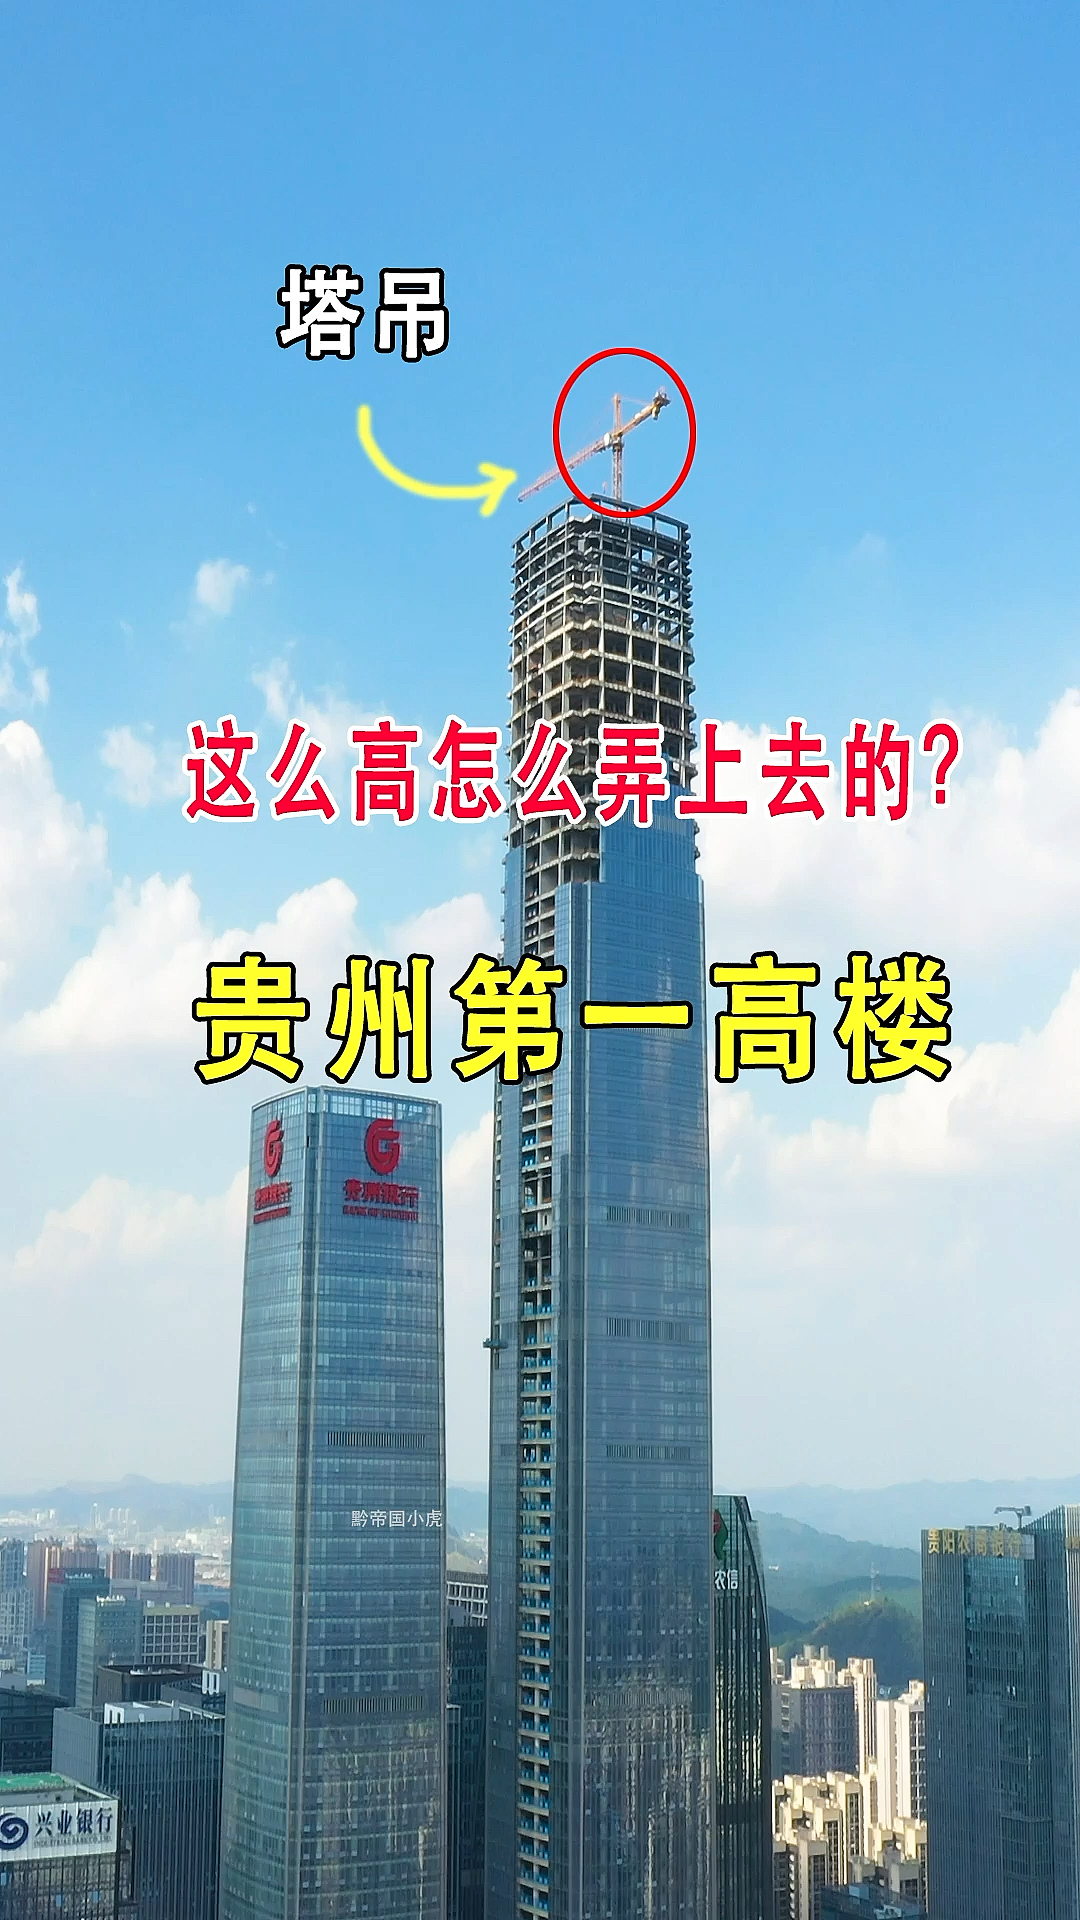 贵州第一高楼,高400多米,79层,目前是贵州省首个超400多米的超高层